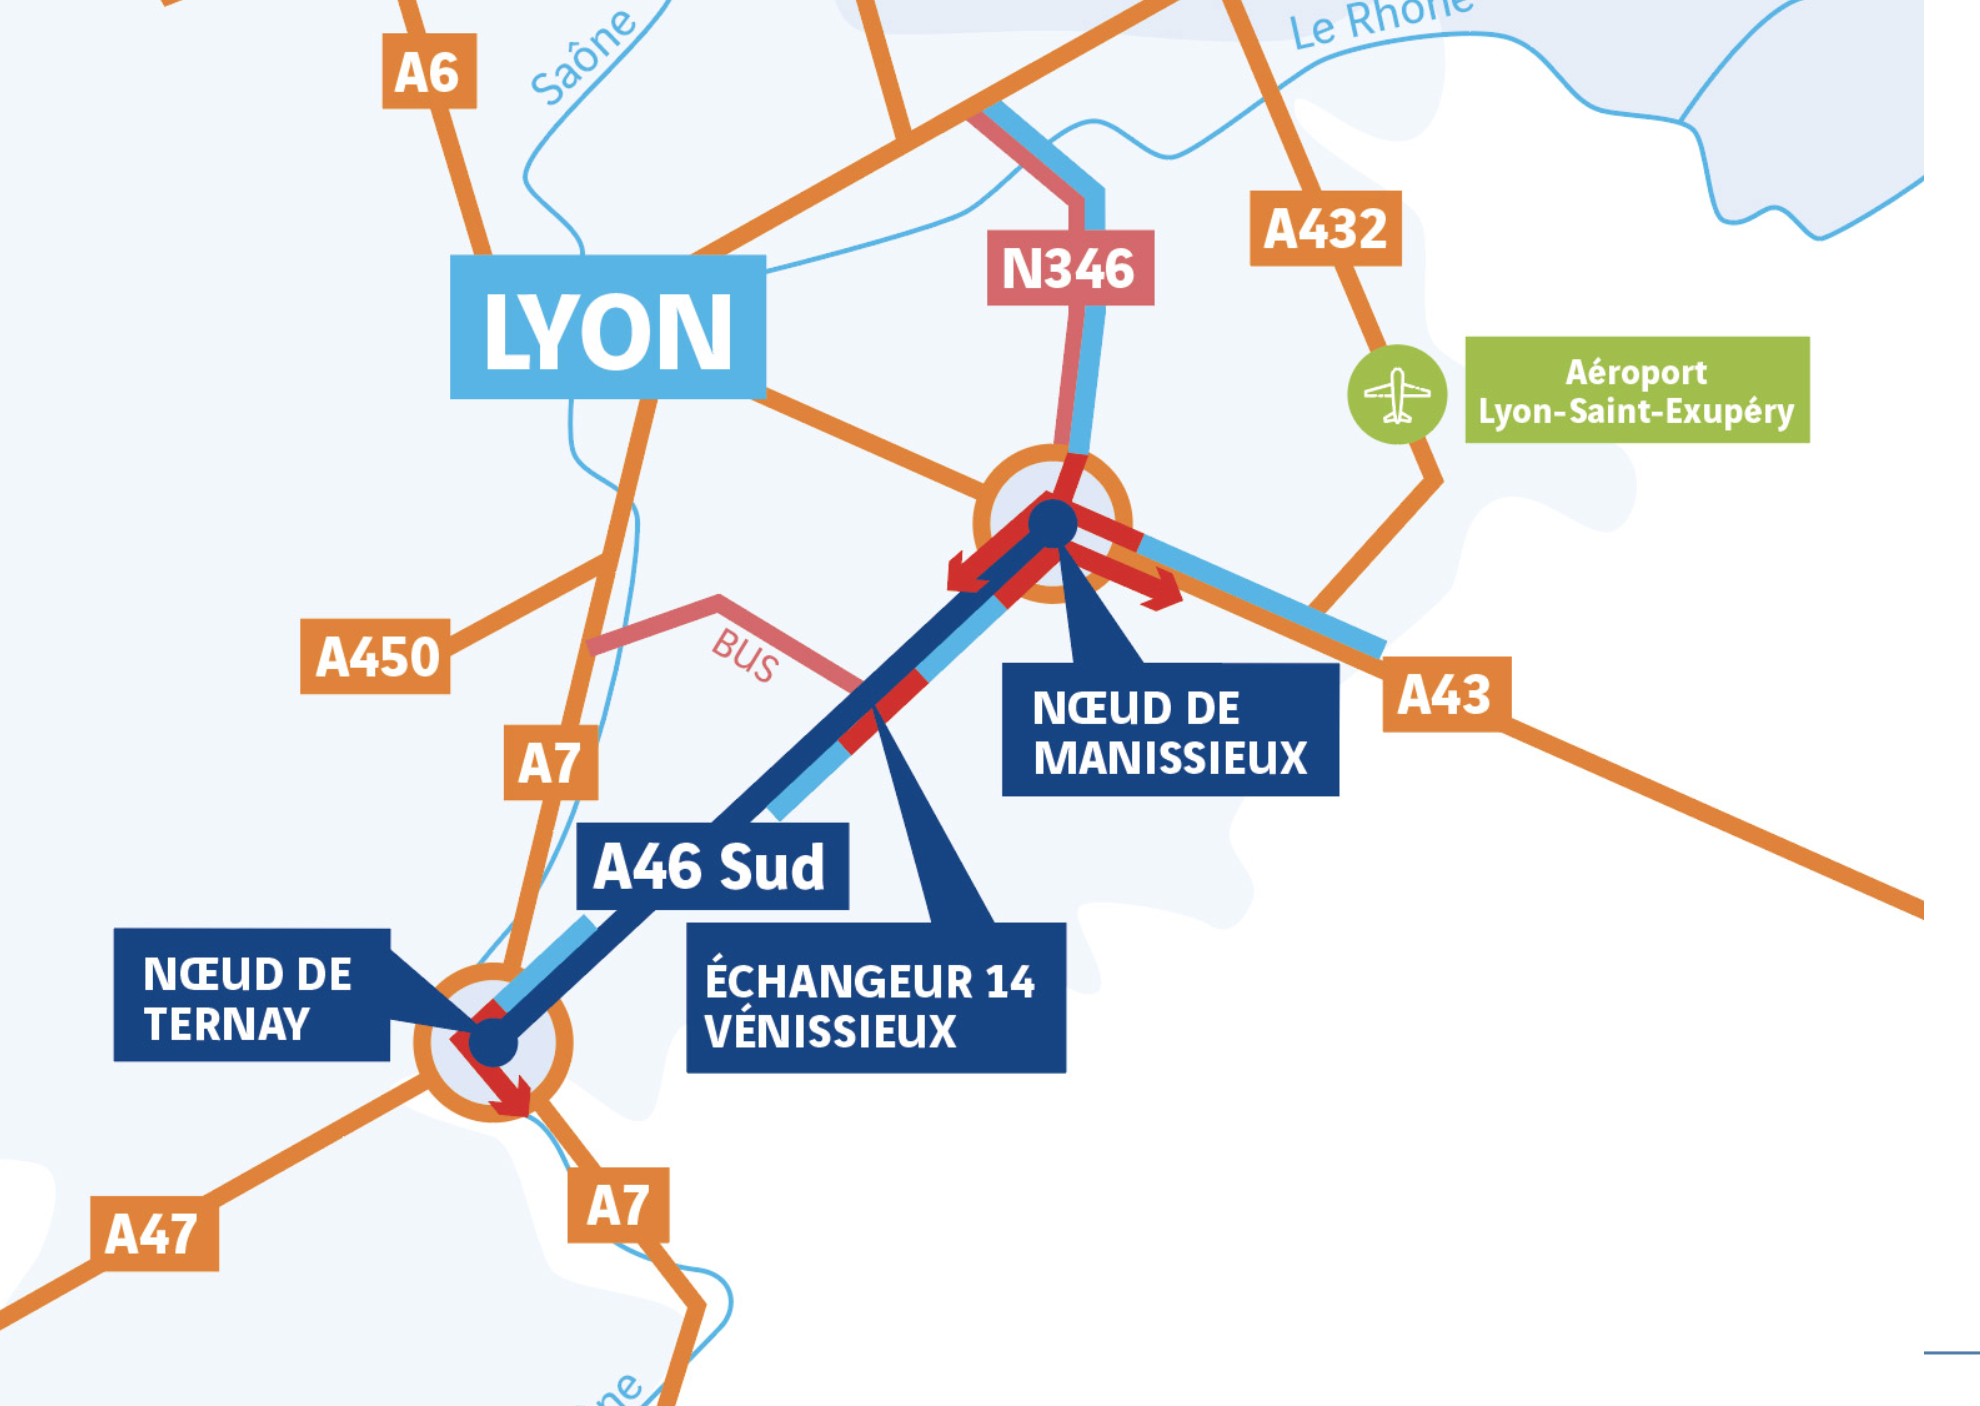 A46 Sud à Lyon : la concertation lancée dans la difficulté